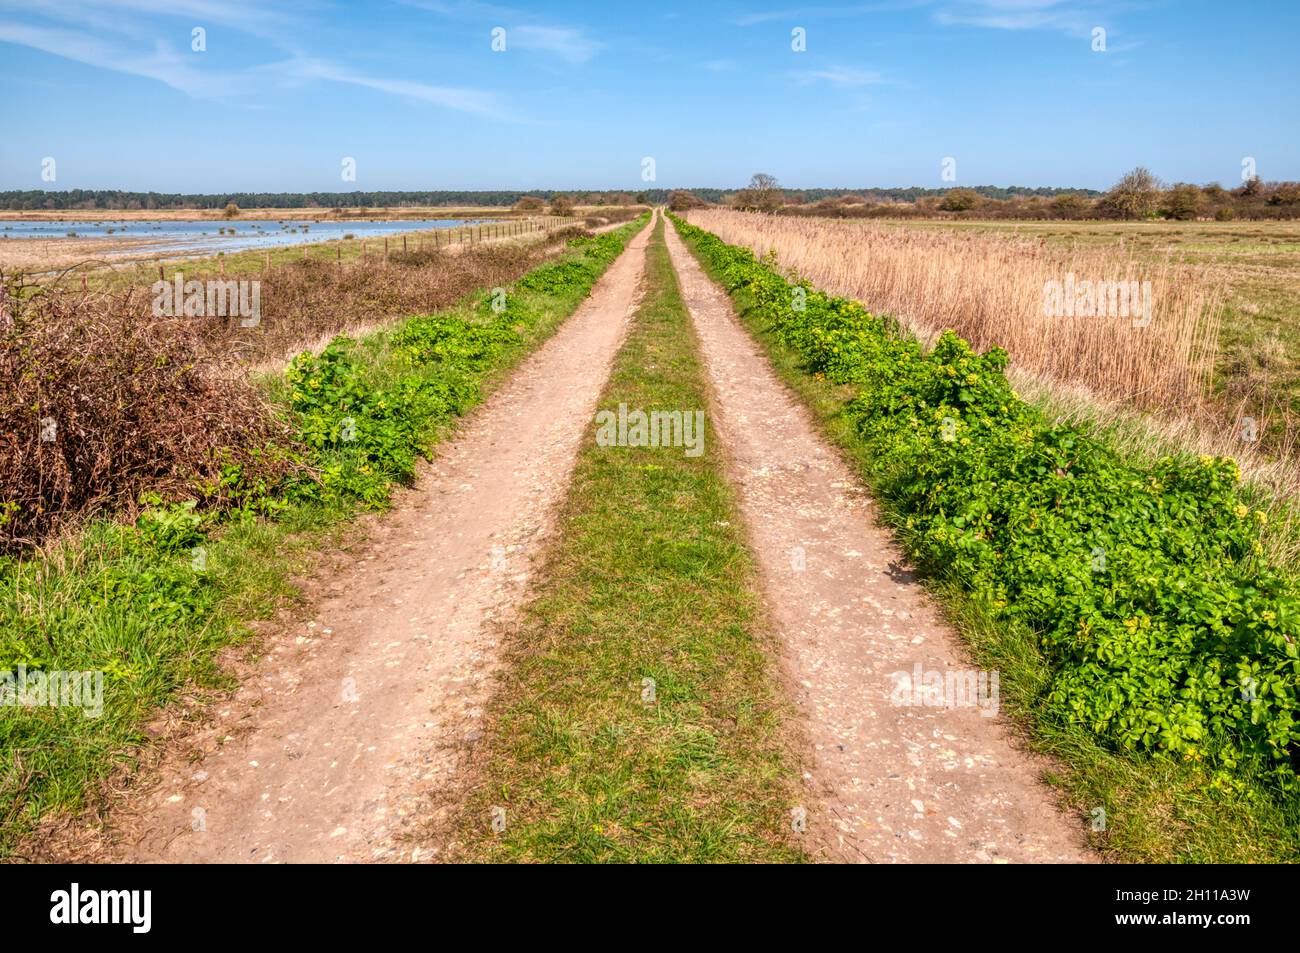 Una pista de granja recta que cruza los pantanos de pastoreo detrás de la costa norte de Norfolk dentro de la zona de excepcional belleza natural. Foto de stock